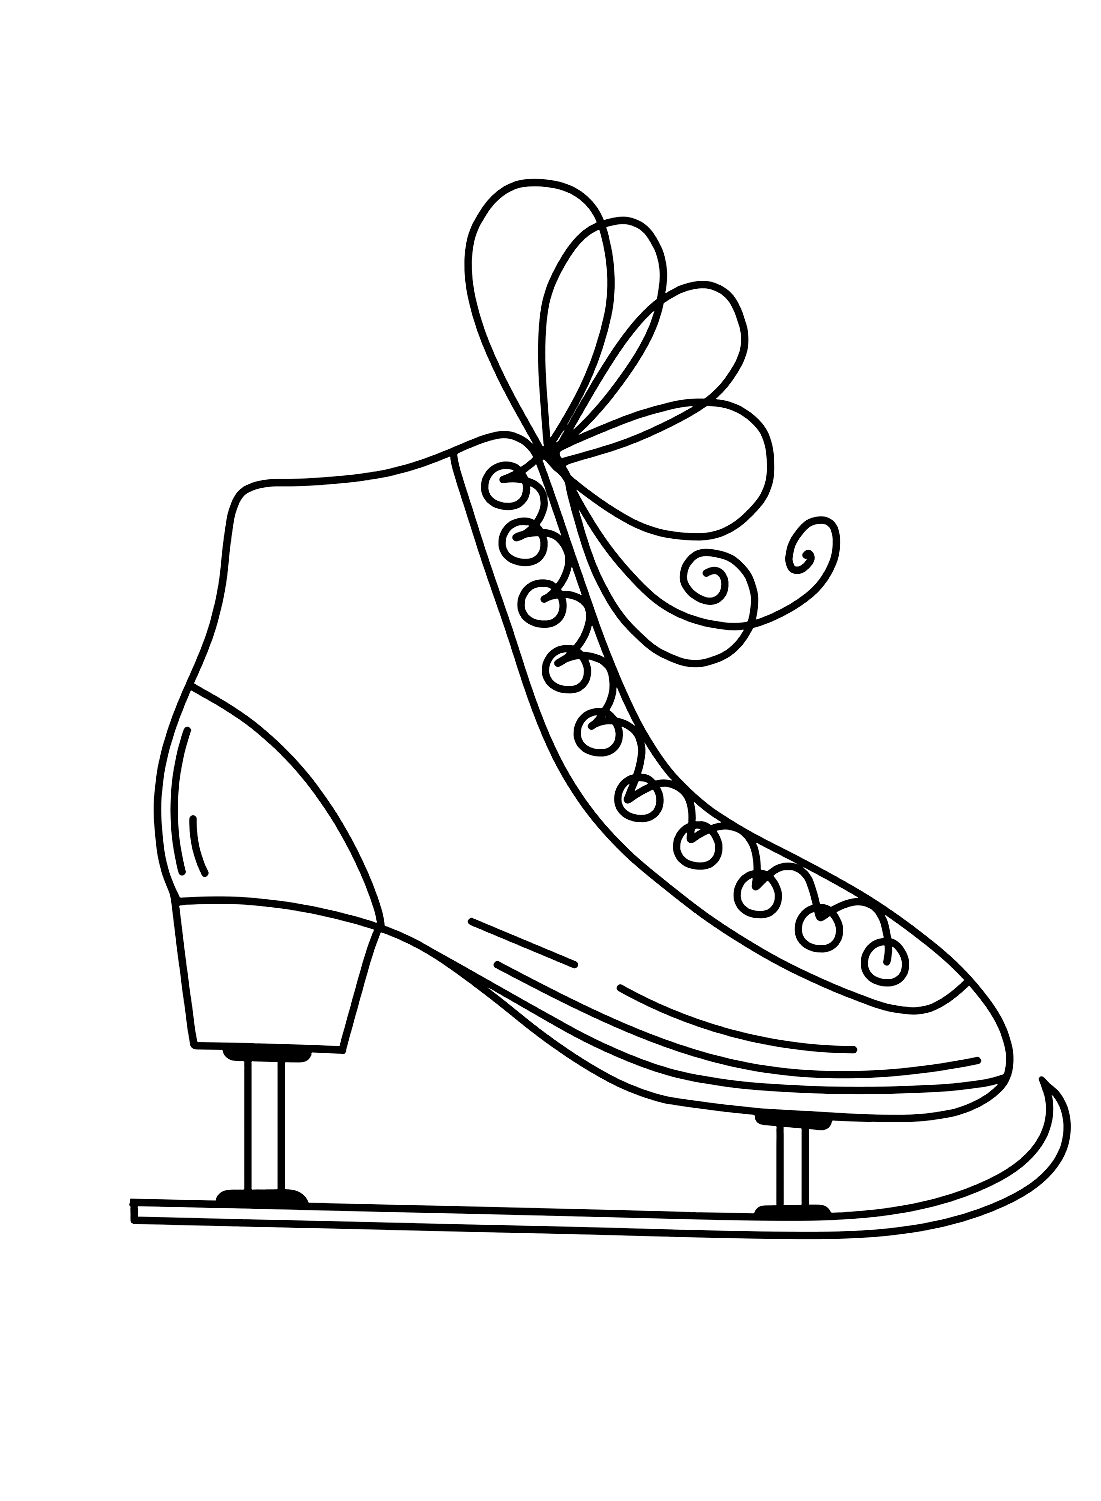 Hoja para colorear de patines de hielo de Shoe